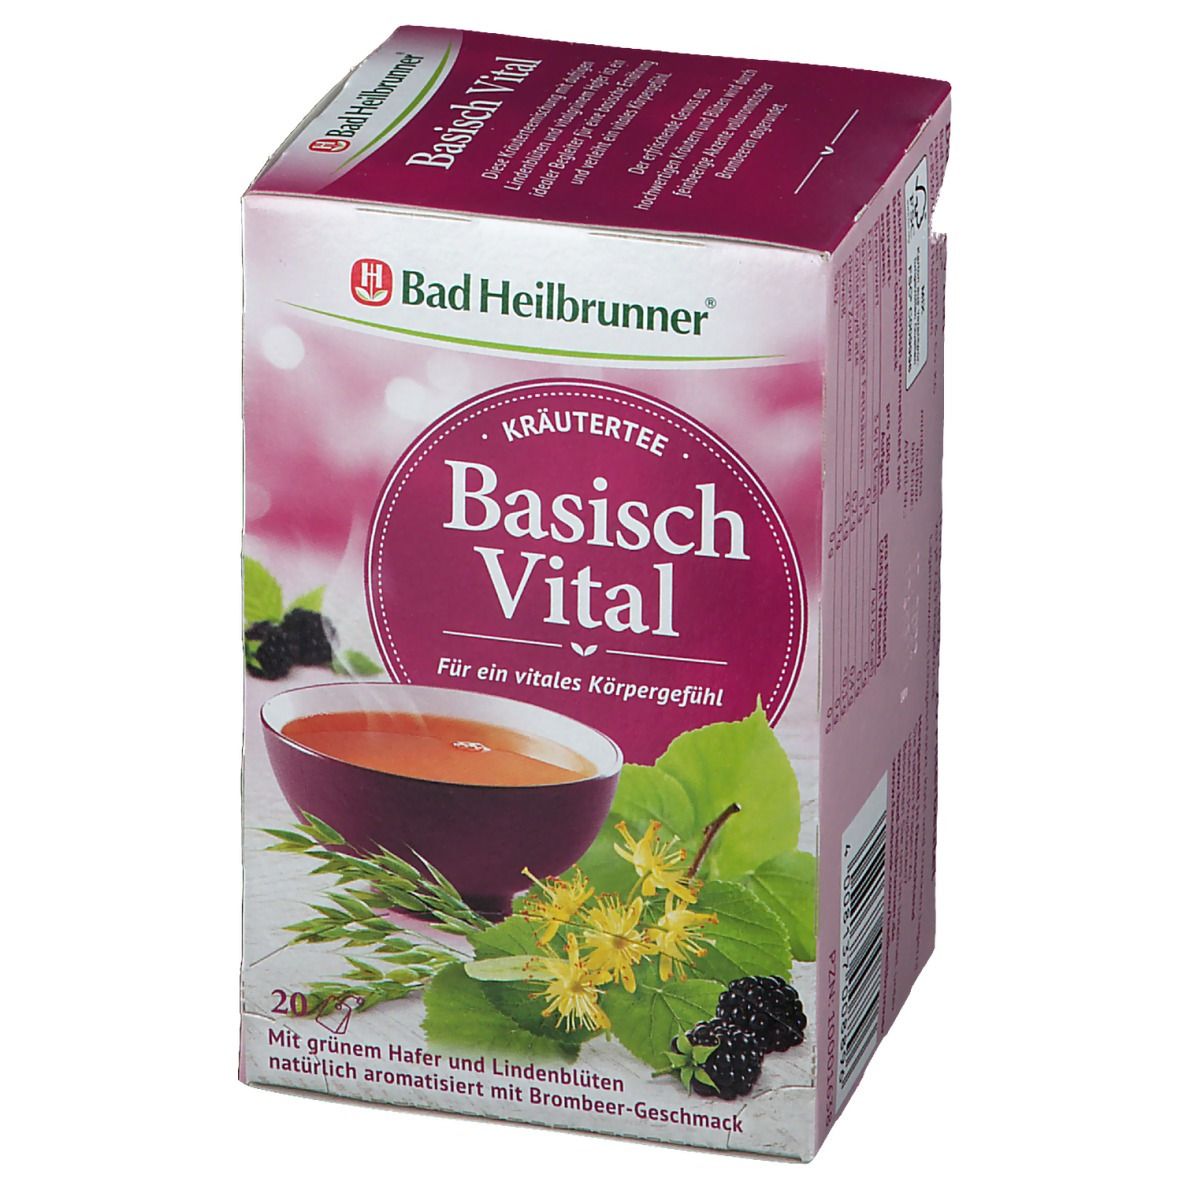 Bad Heilbrunner® Alkaline Vital Herbal Tea